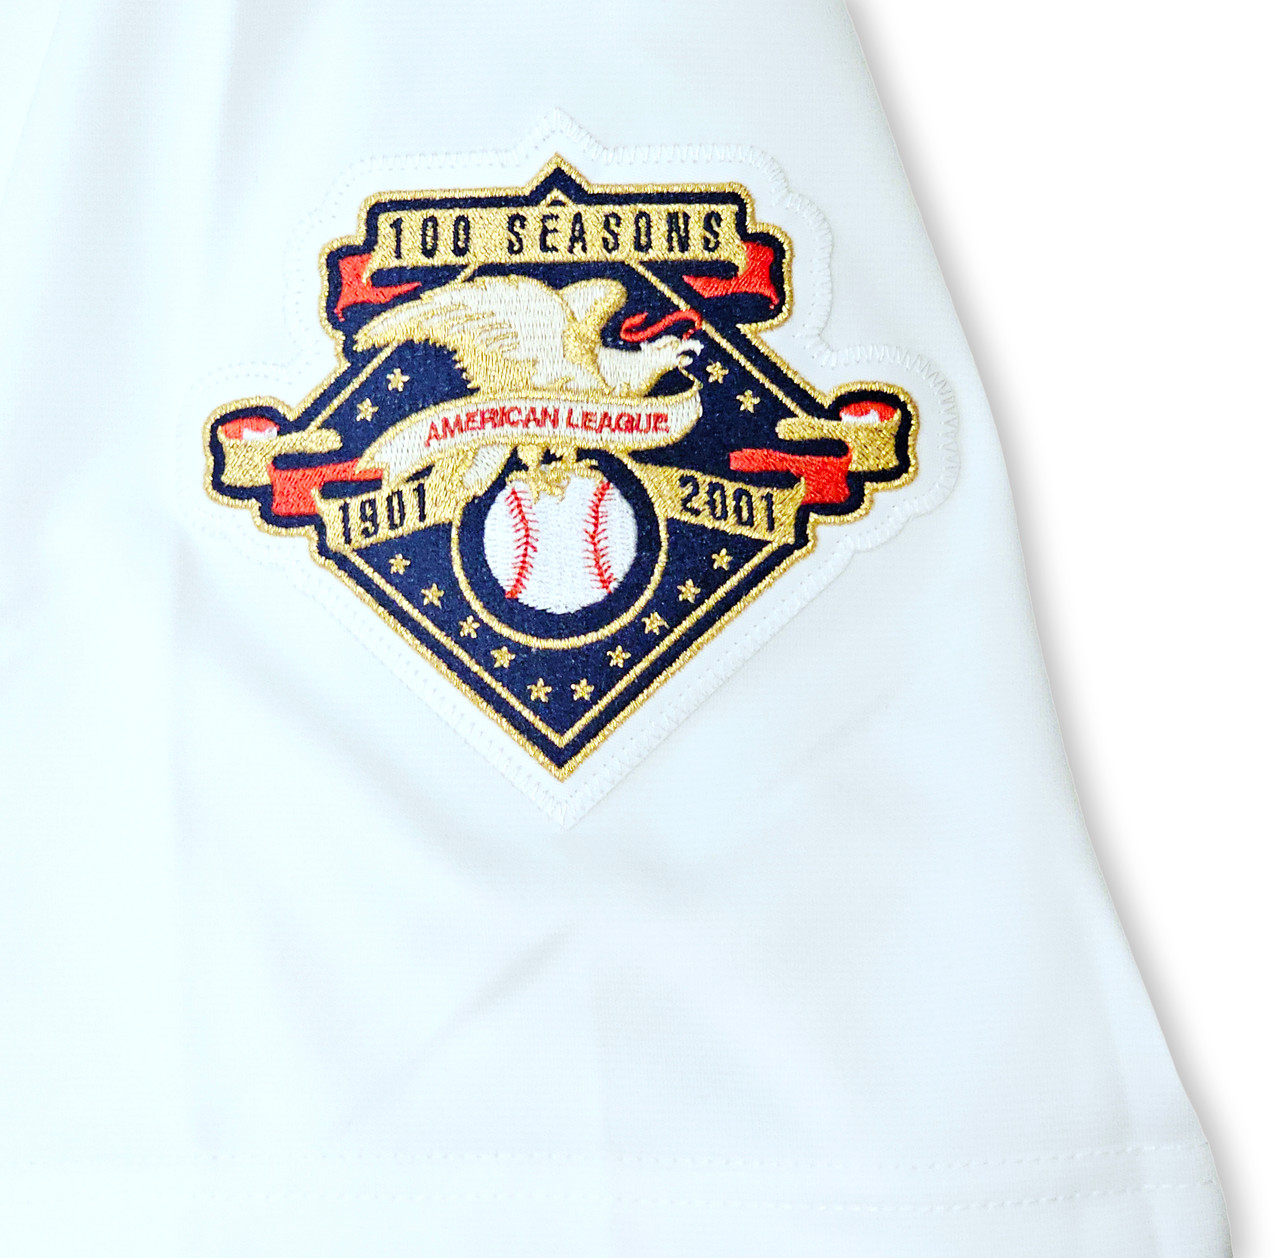 2001 Seattle Mariners “MLB 100th Year Anniversary” Stitched Ichiro Suz